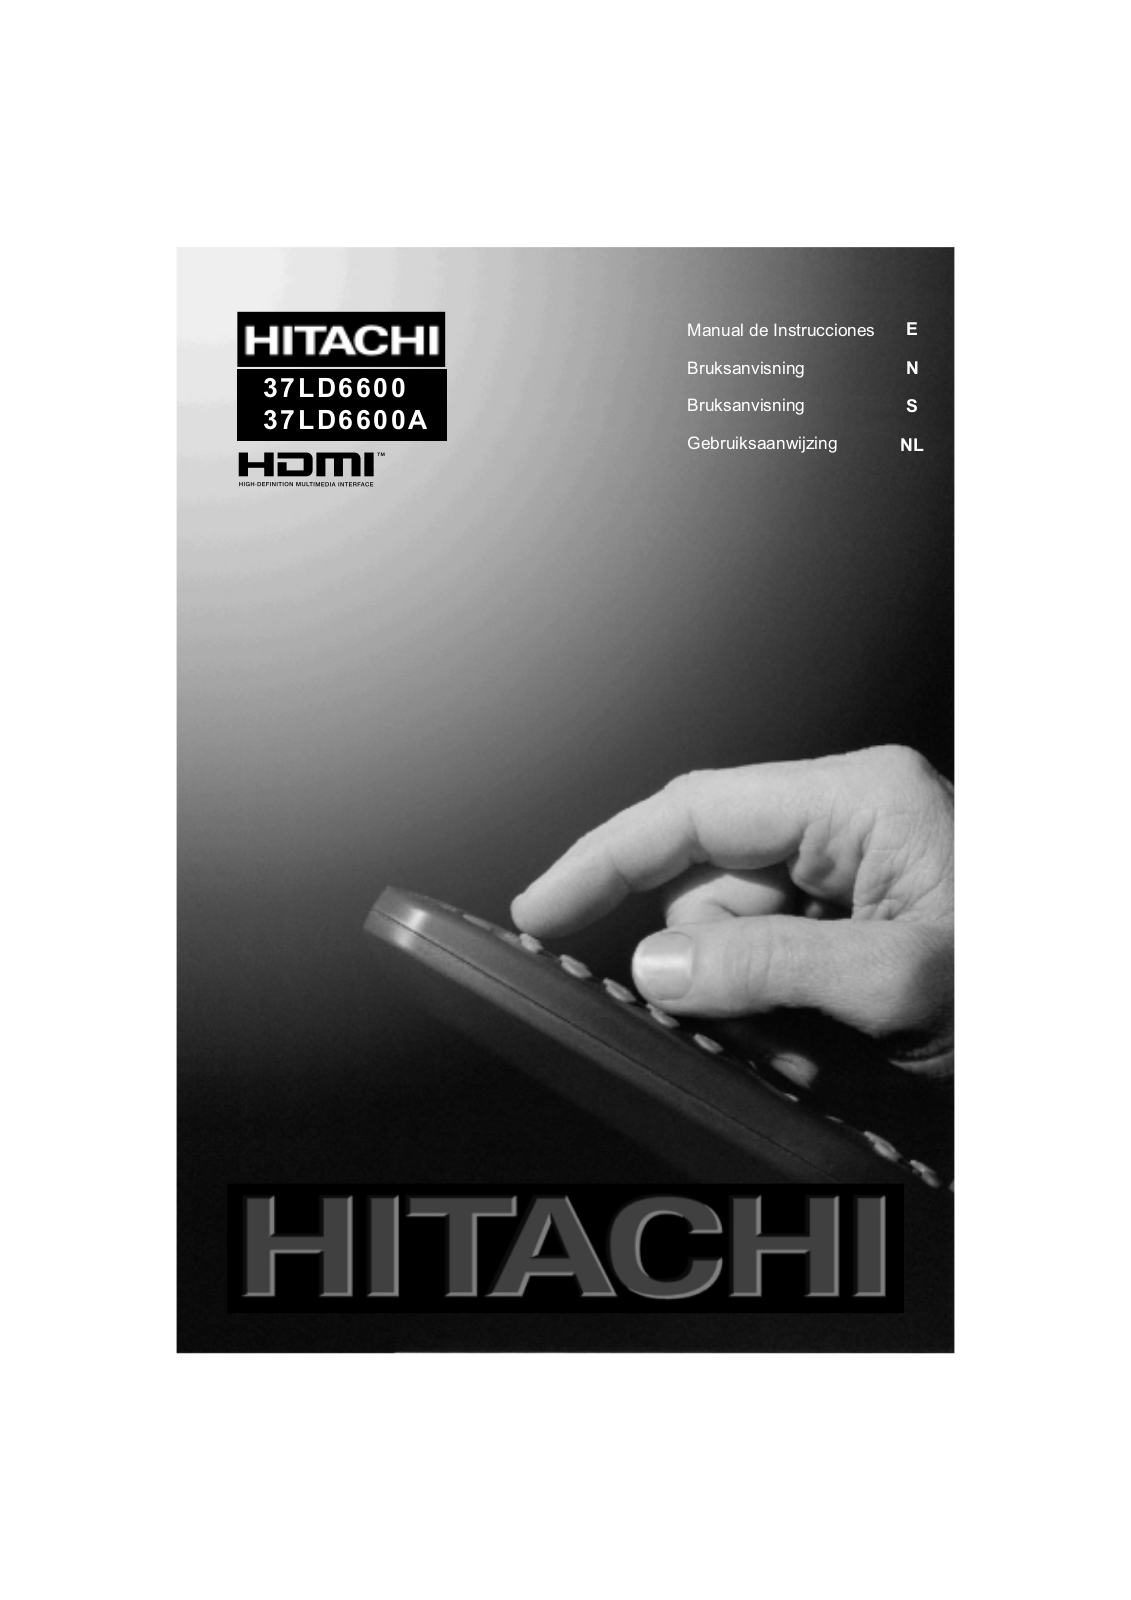 Hitachi 37LD6600, 37LD6600A User Manual